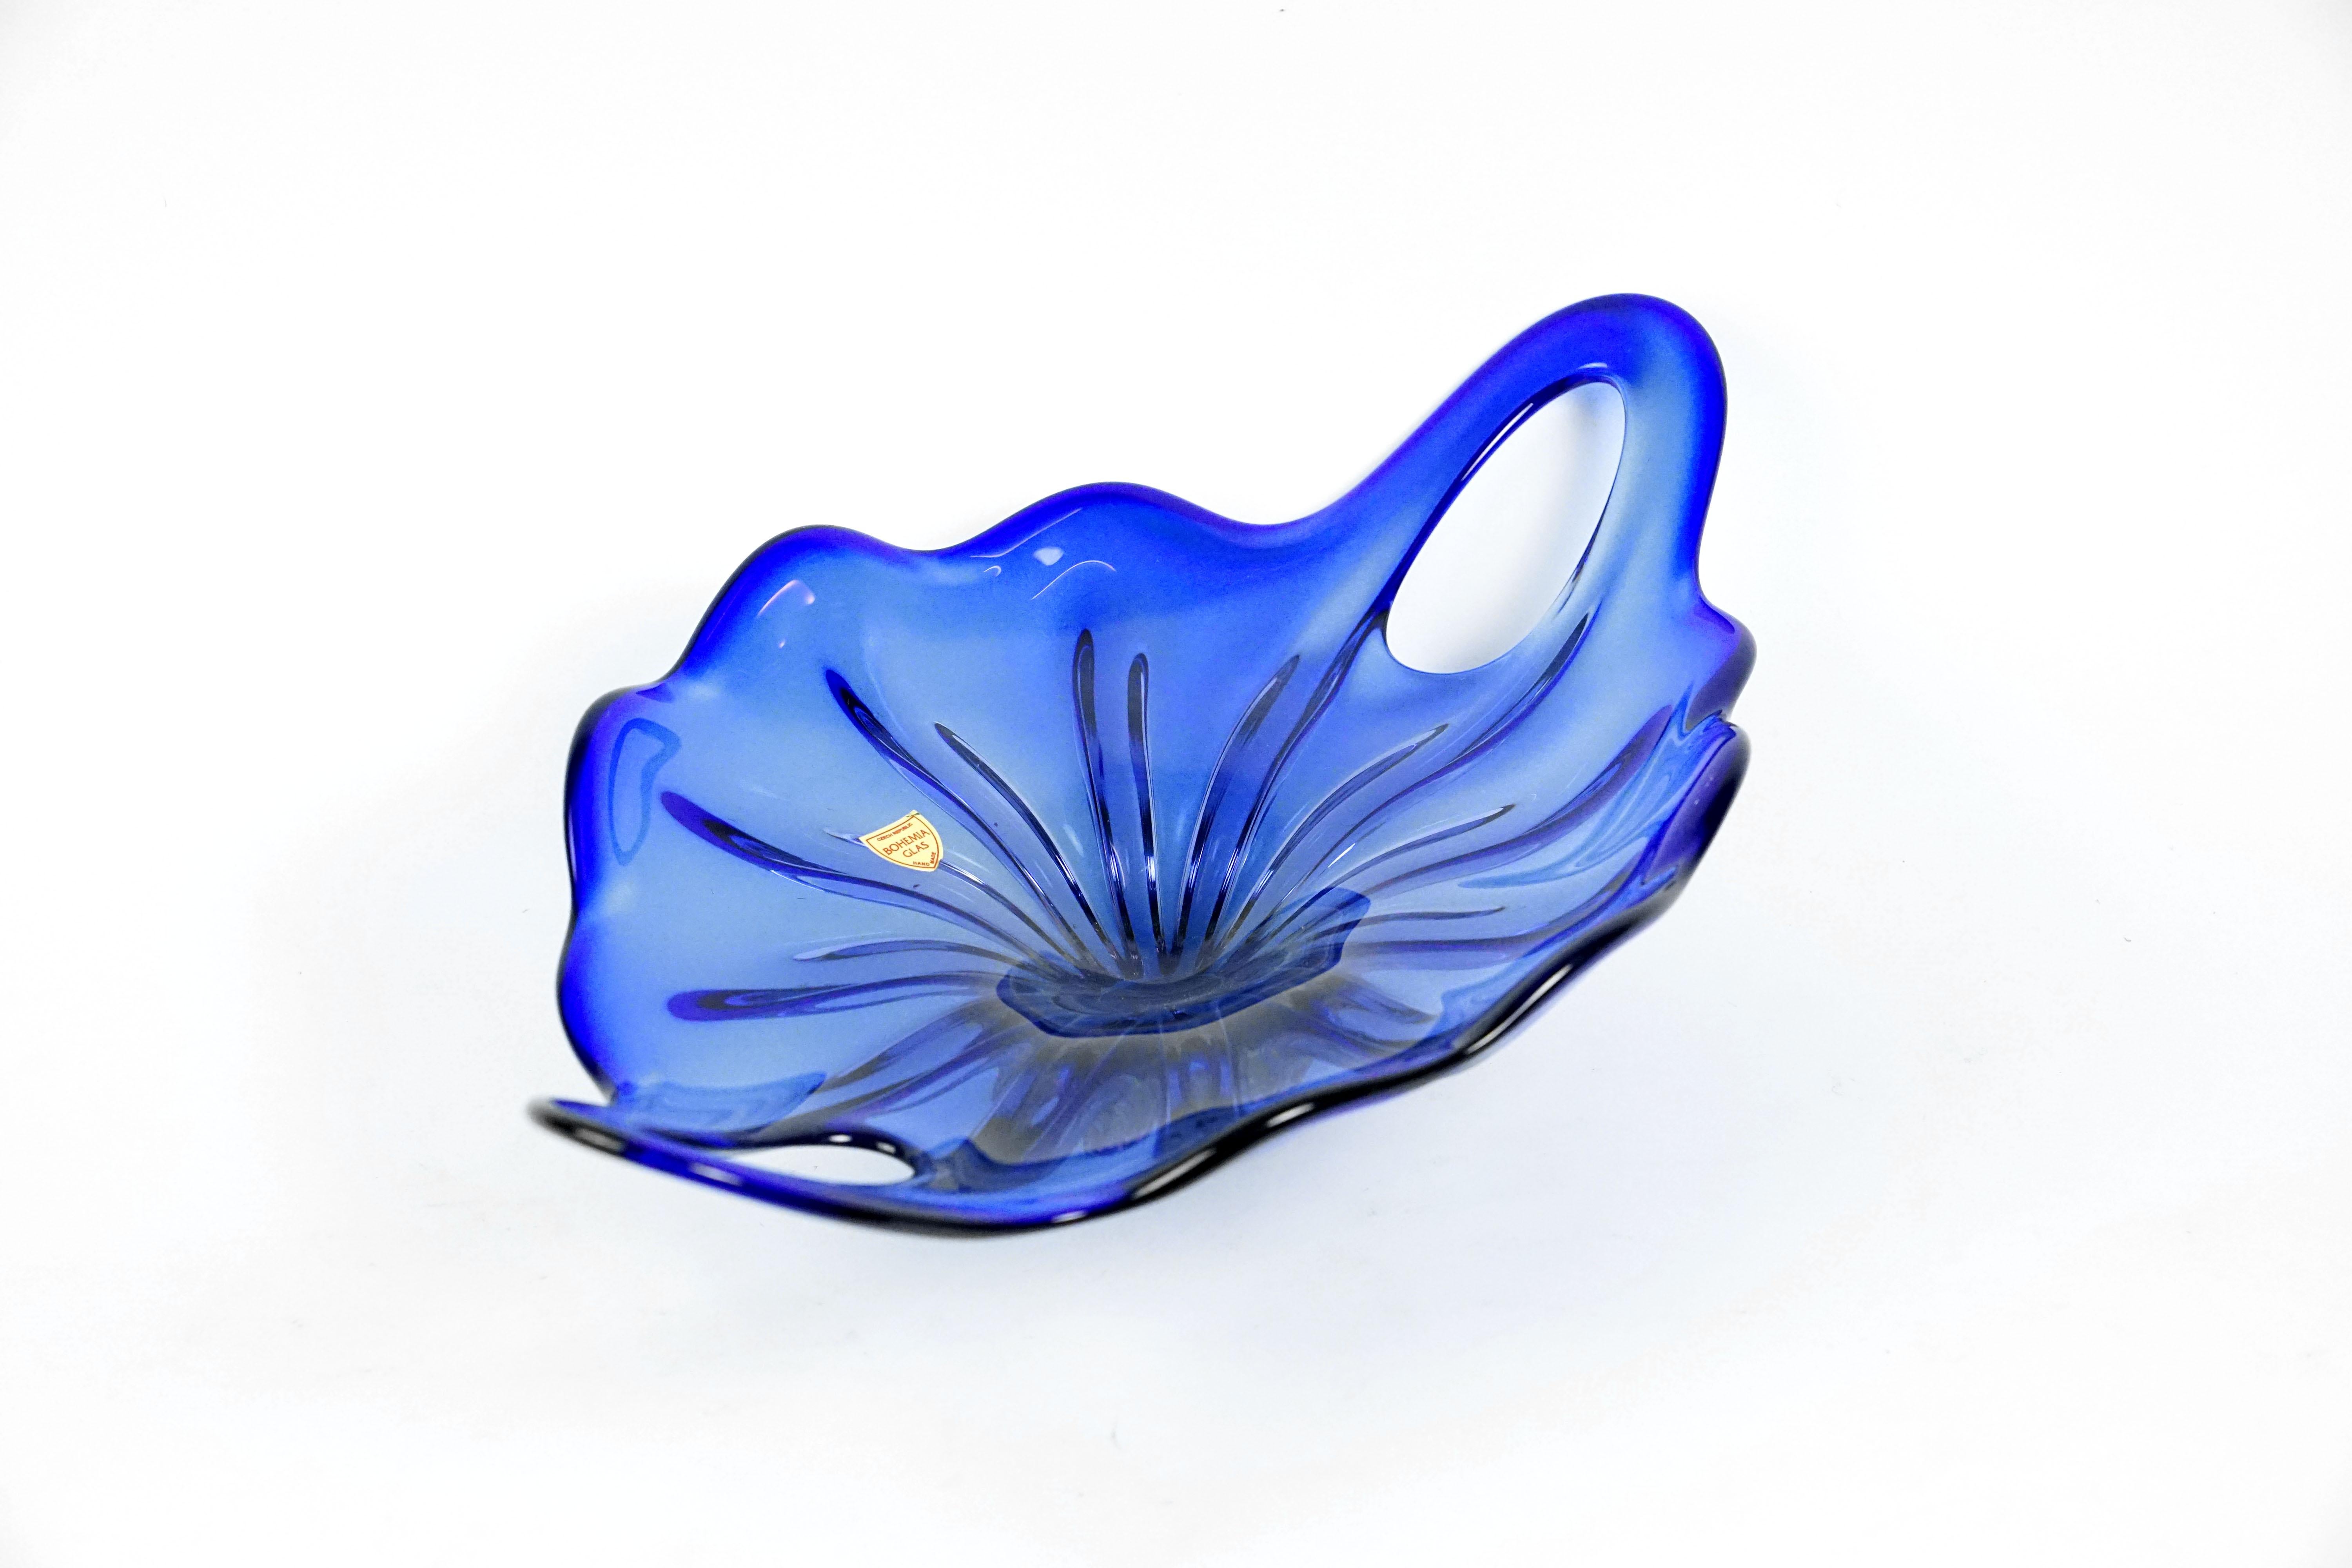 Mid-Century Modern Blue Art Glass Bowl by Josef Hospodka for Chribska Glassmakers, 1960s For Sale